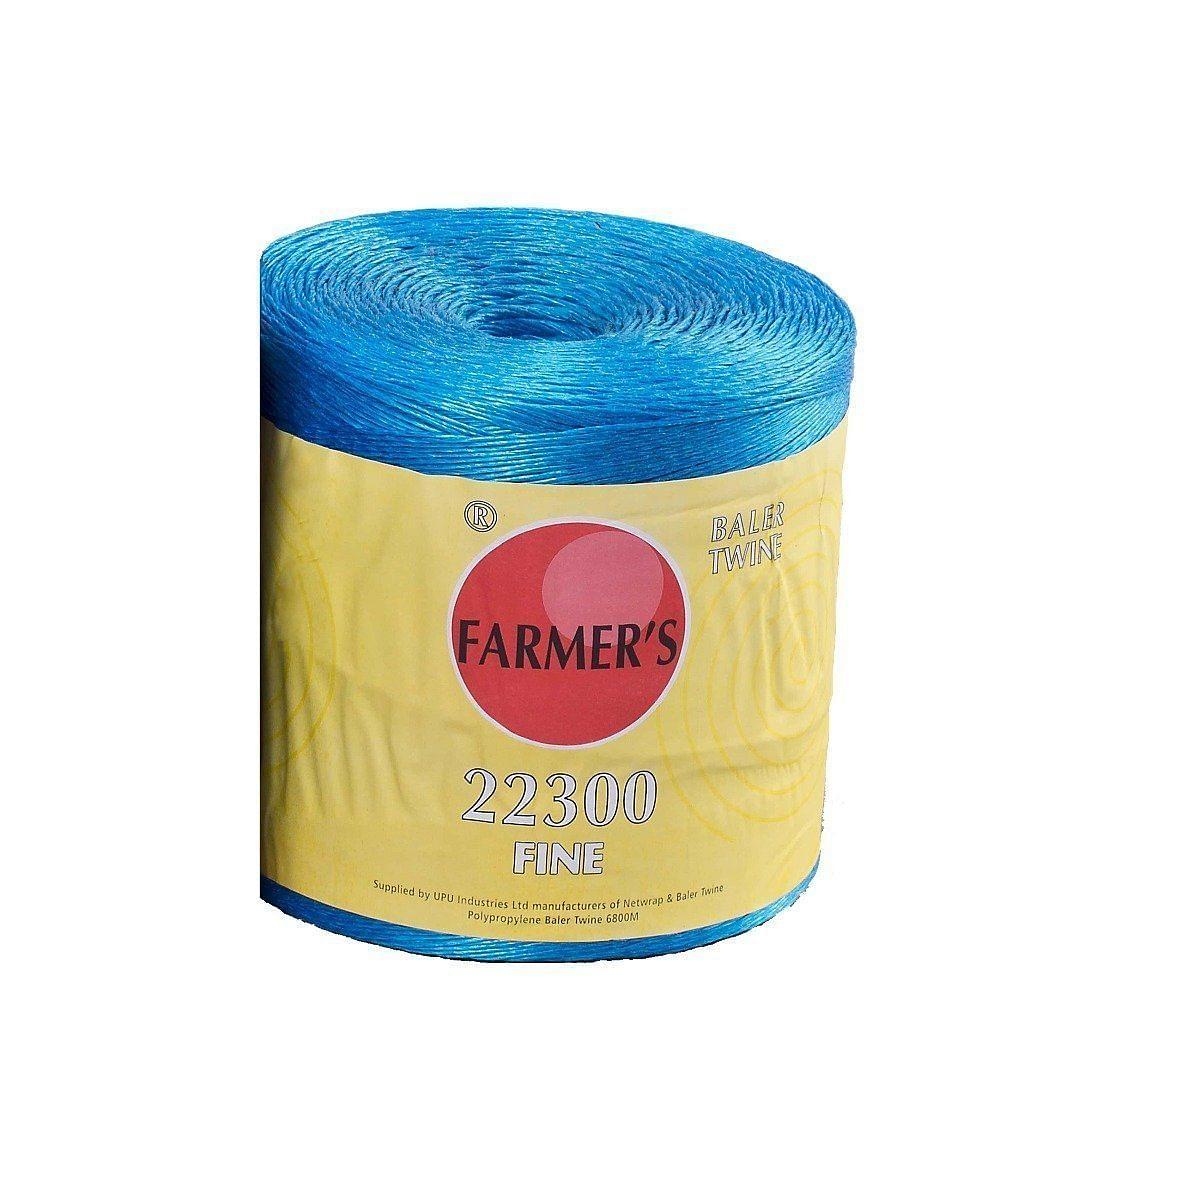 Farmer's Fine Baler Twine 22300 - Chelford Farm Supplies